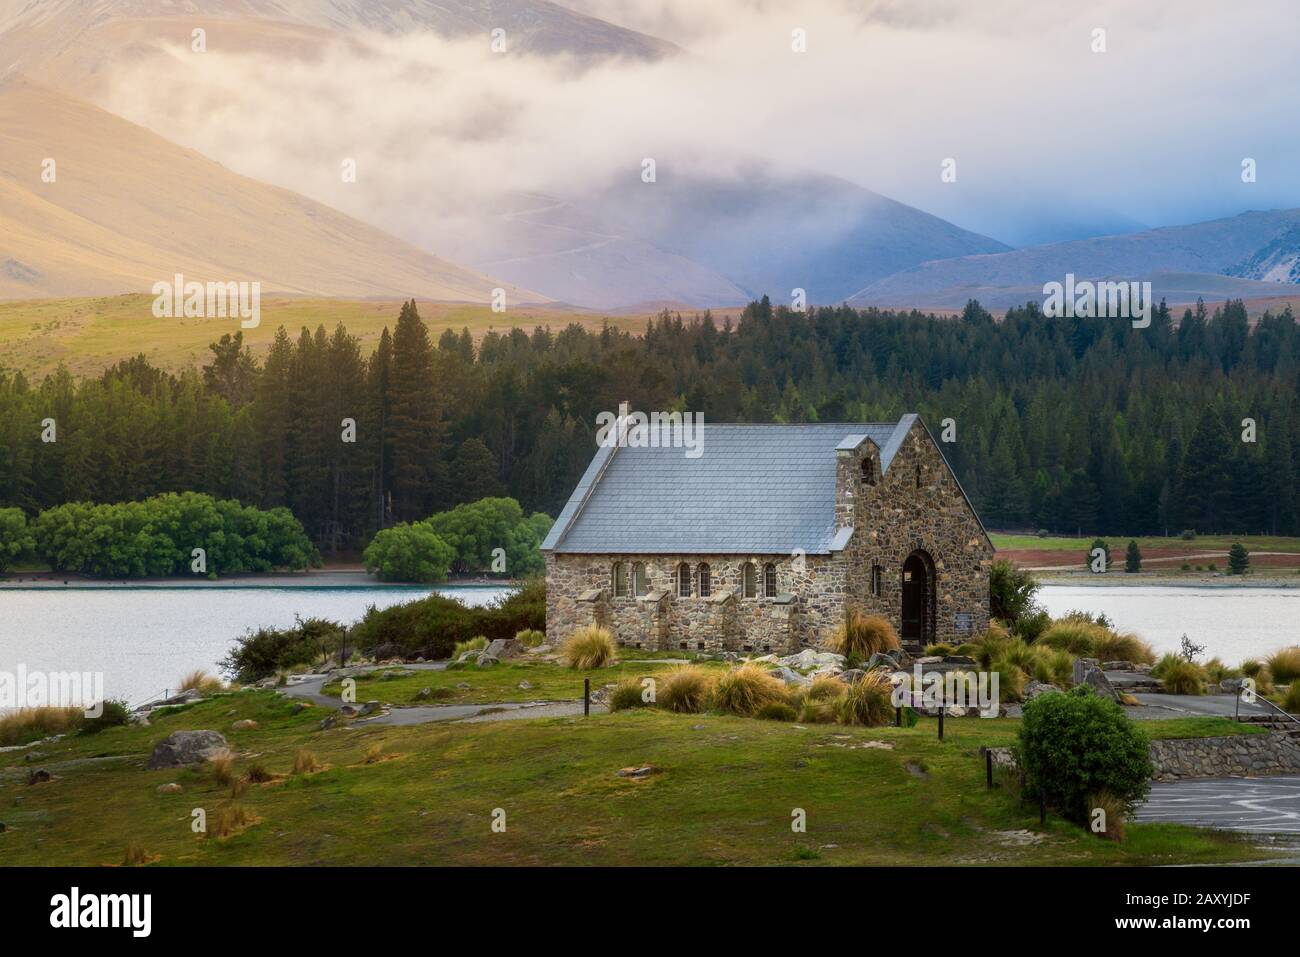 Église Du Bon Berger Du Lac Tekapo Nouvelle-Zélande De L'Île Du Sud. Paysage néo-zélandais. Le tourisme d'été en Nouvelle-Zélande. Banque D'Images